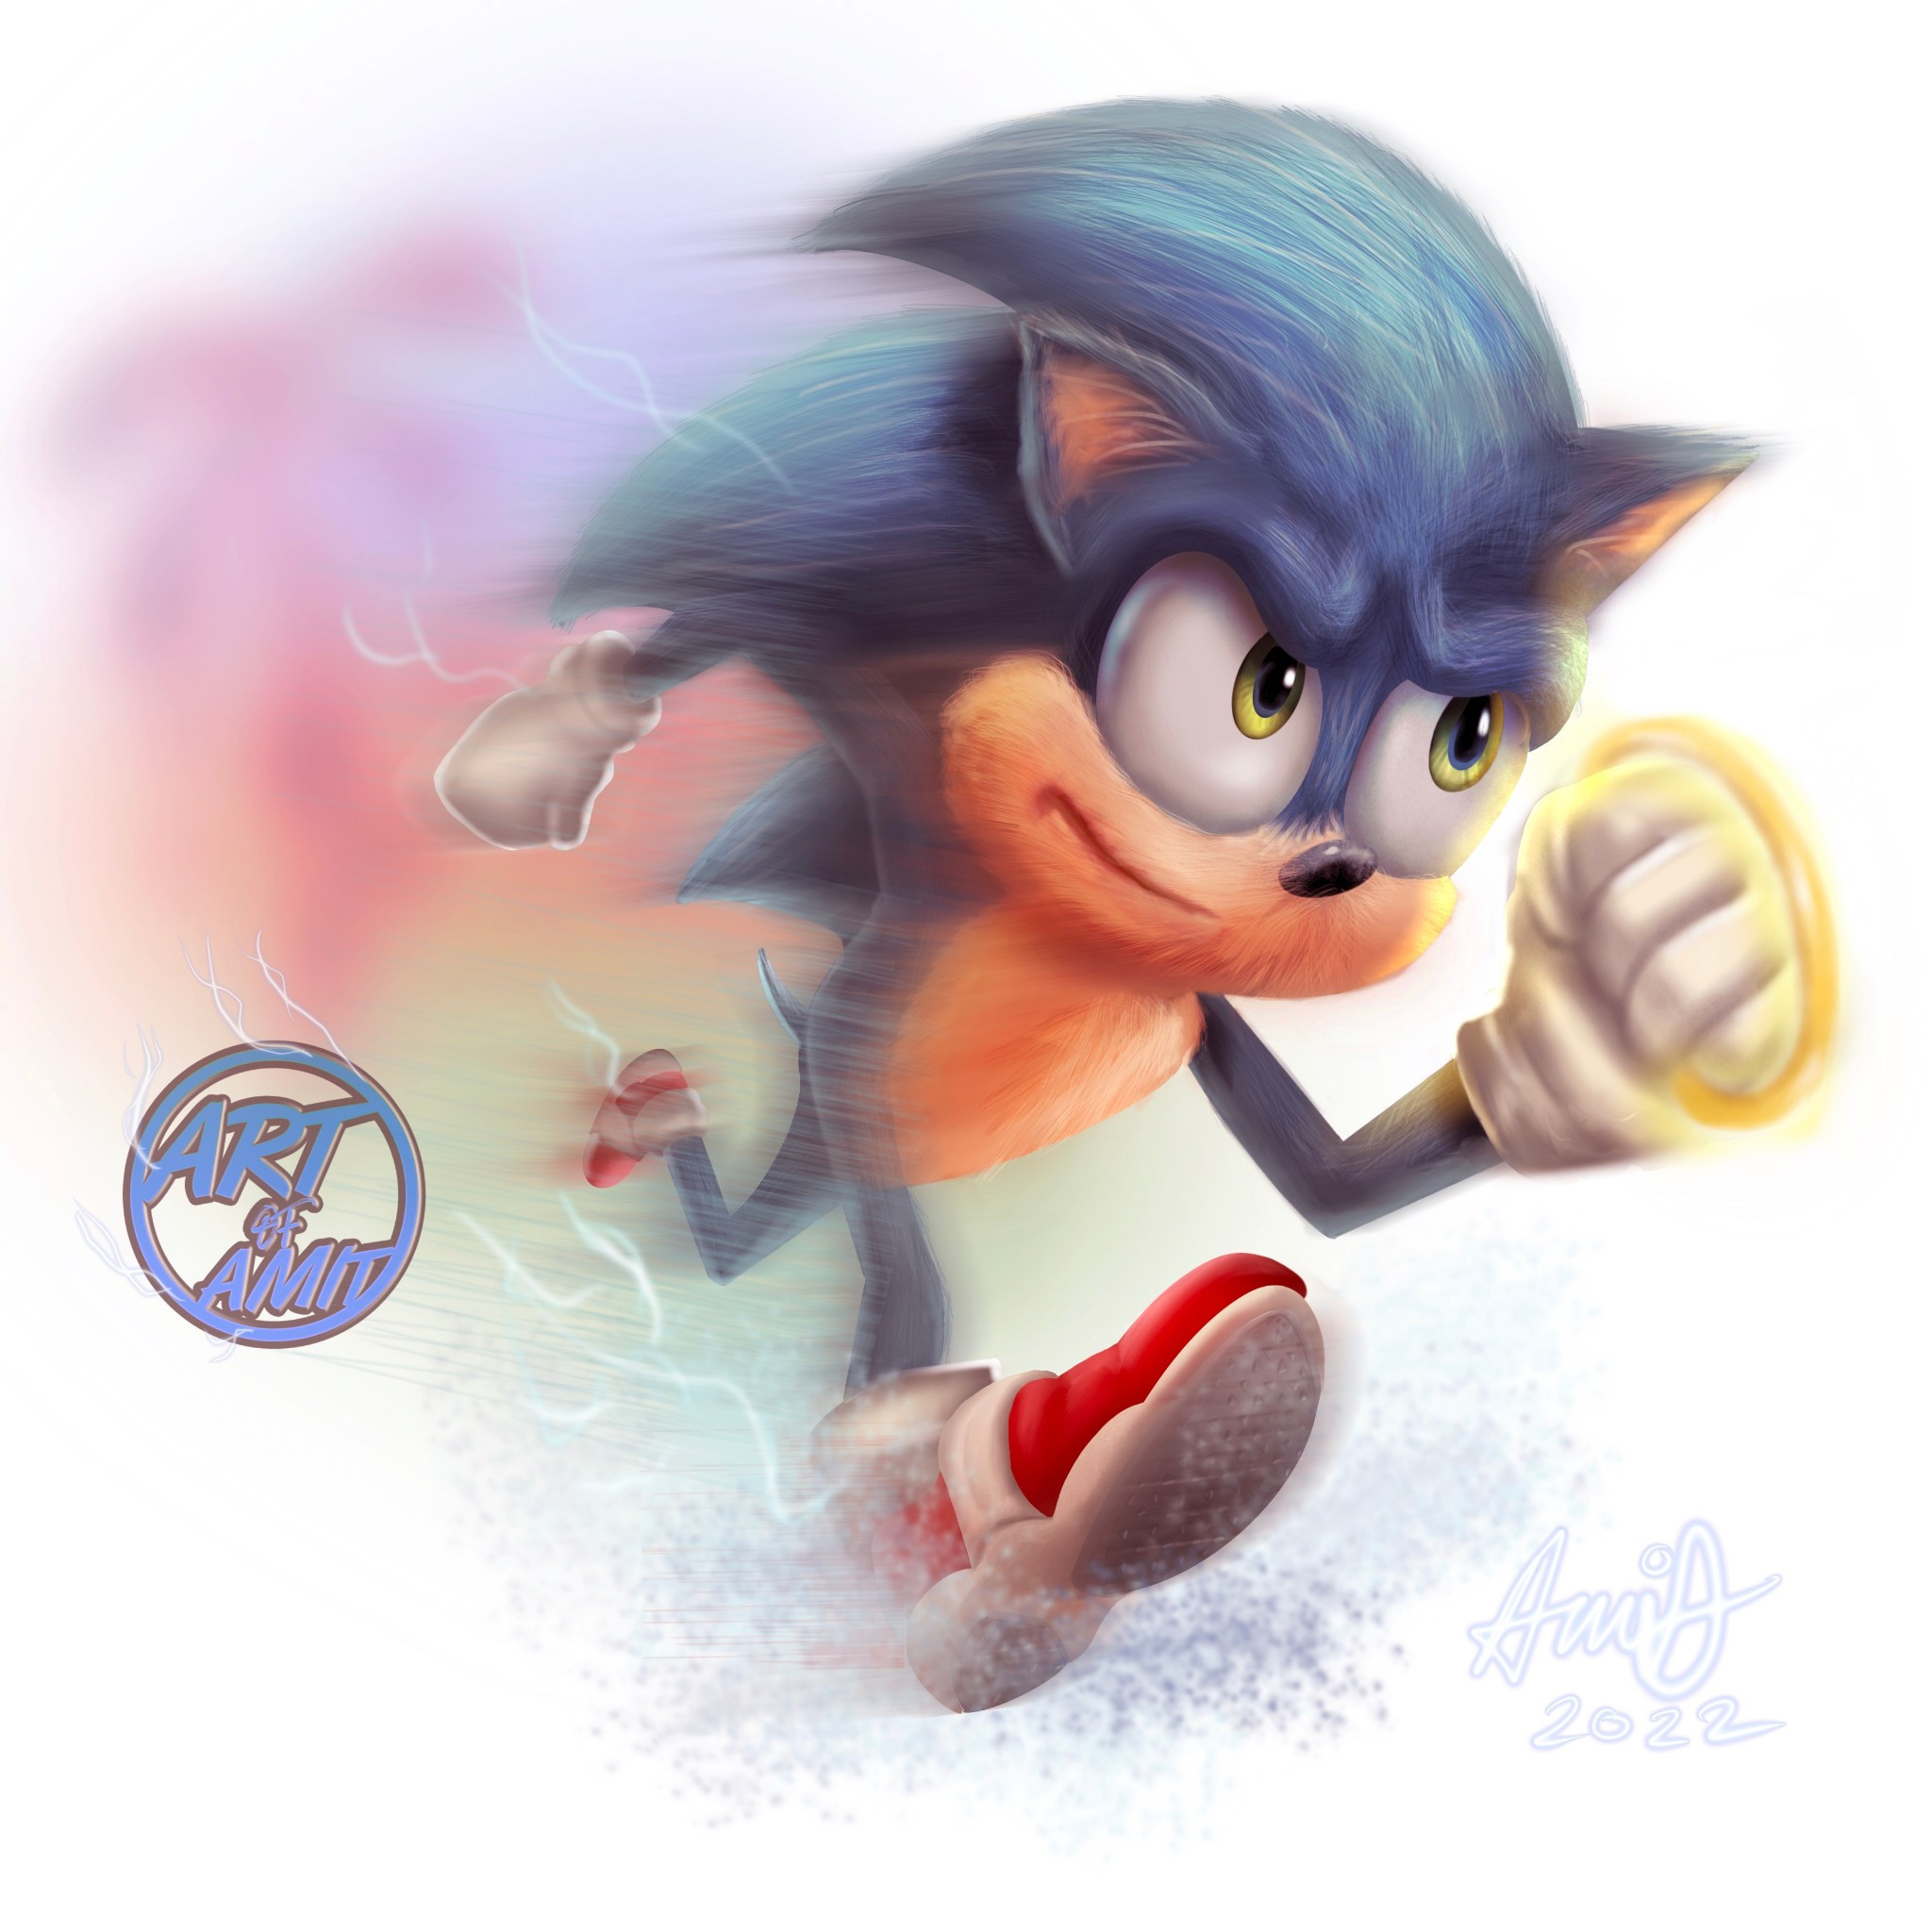 Fan art of Sonic